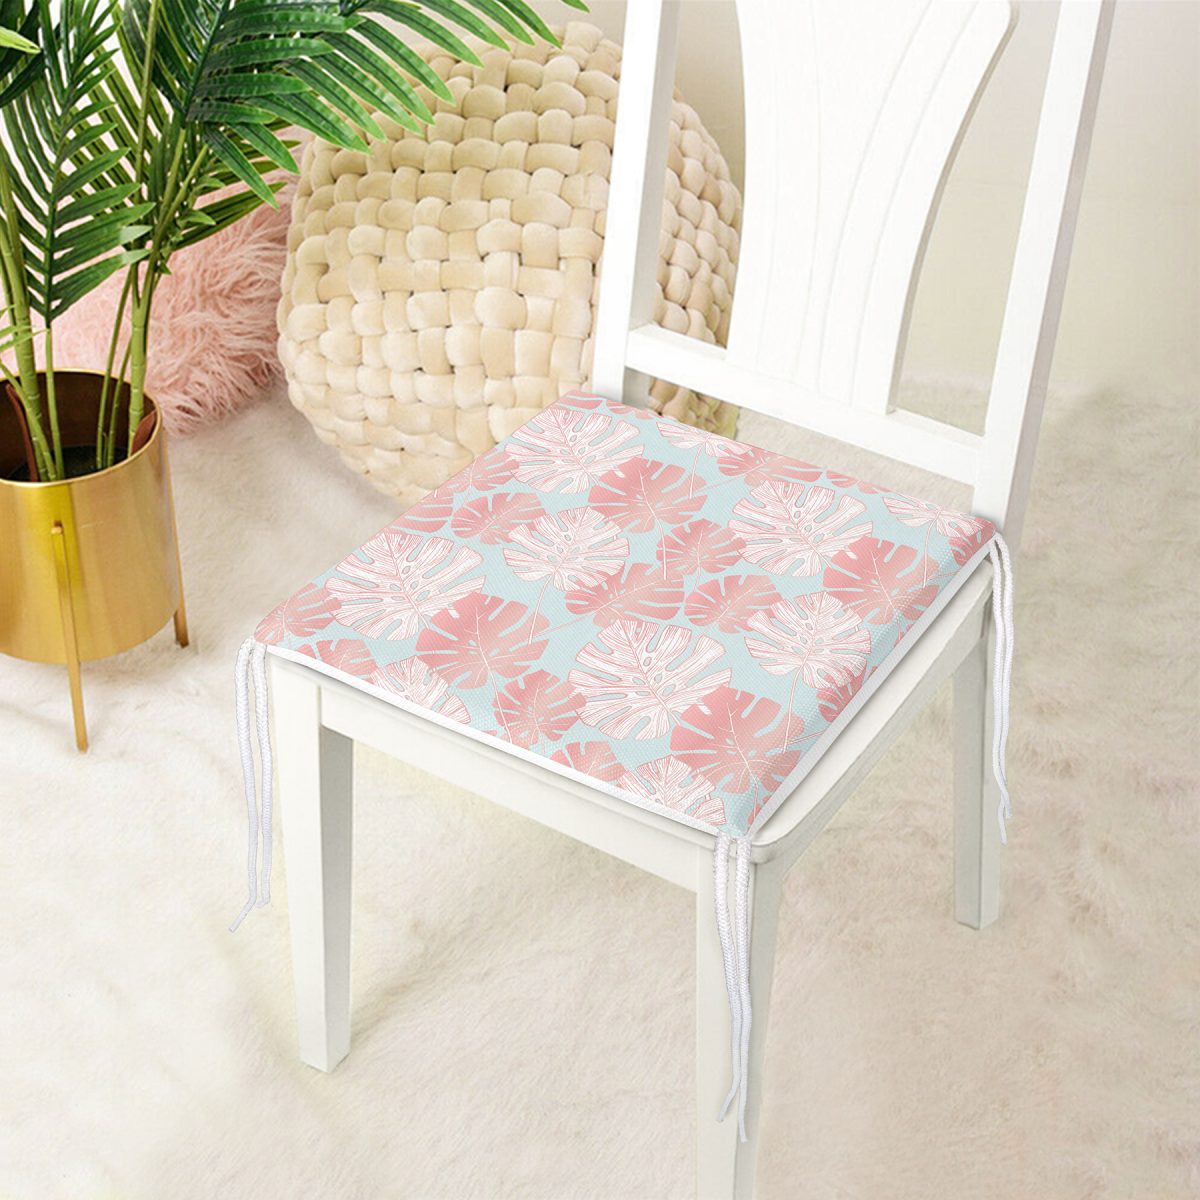 Renkli Zemin Üzerinde Tropikal Pembe Beyaz Yaprak Desenli Fermuarlı Sandalye Minderi Realhomes